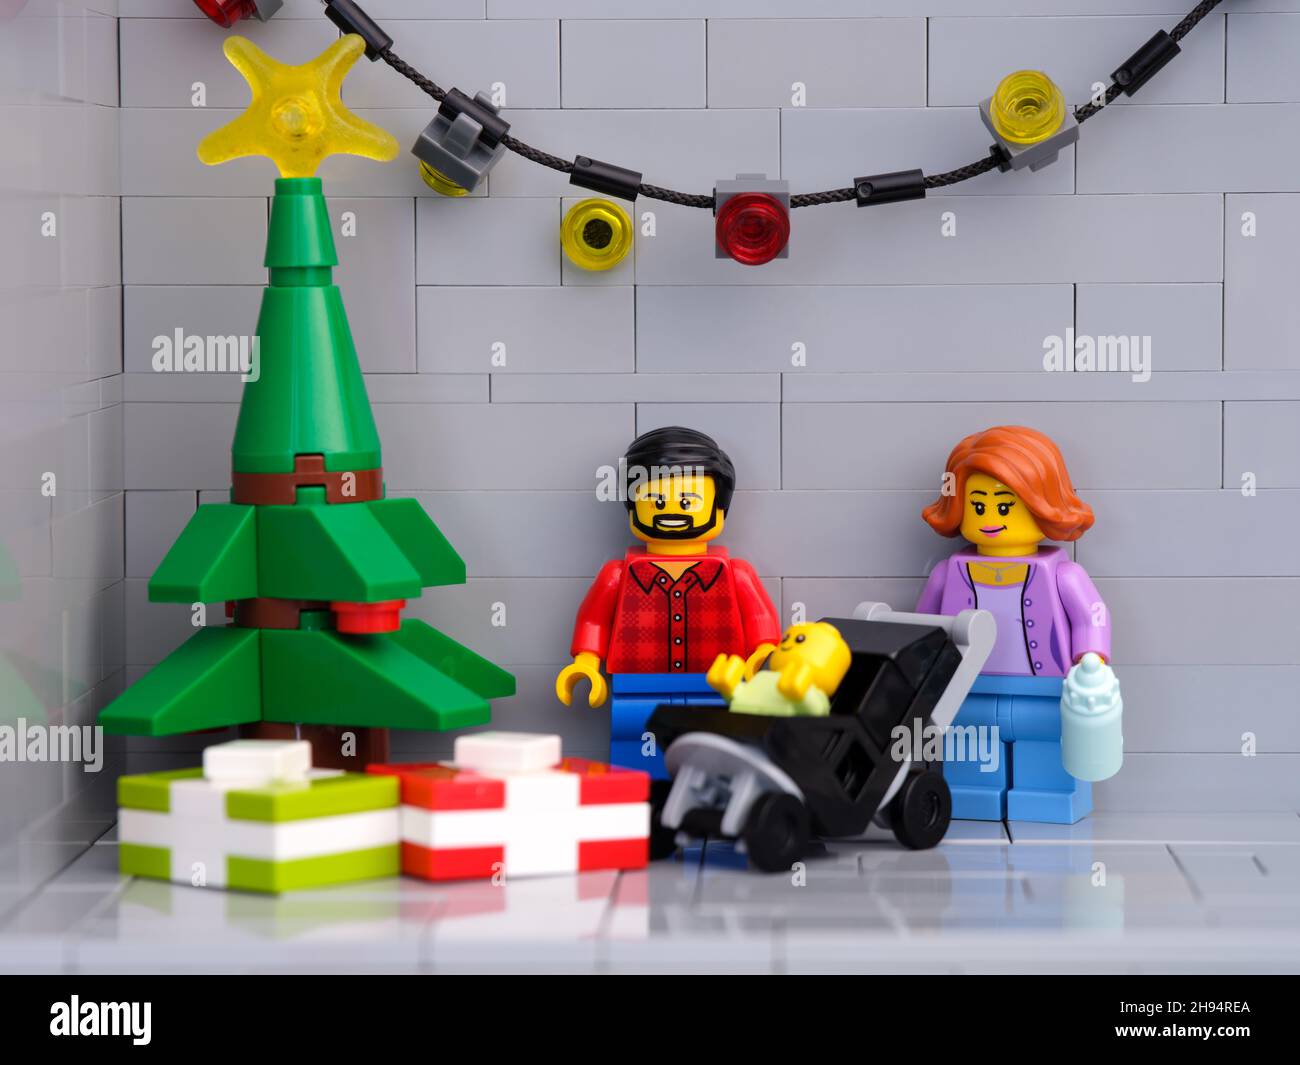 Tambow, Russische Föderation - 01. Dezember 2021 Ein Lego-Vater, eine Mutter und ein Baby minifiguren, die neben einem Weihnachtsbaum stehen, der Geschenke darunter hat. Stockfoto